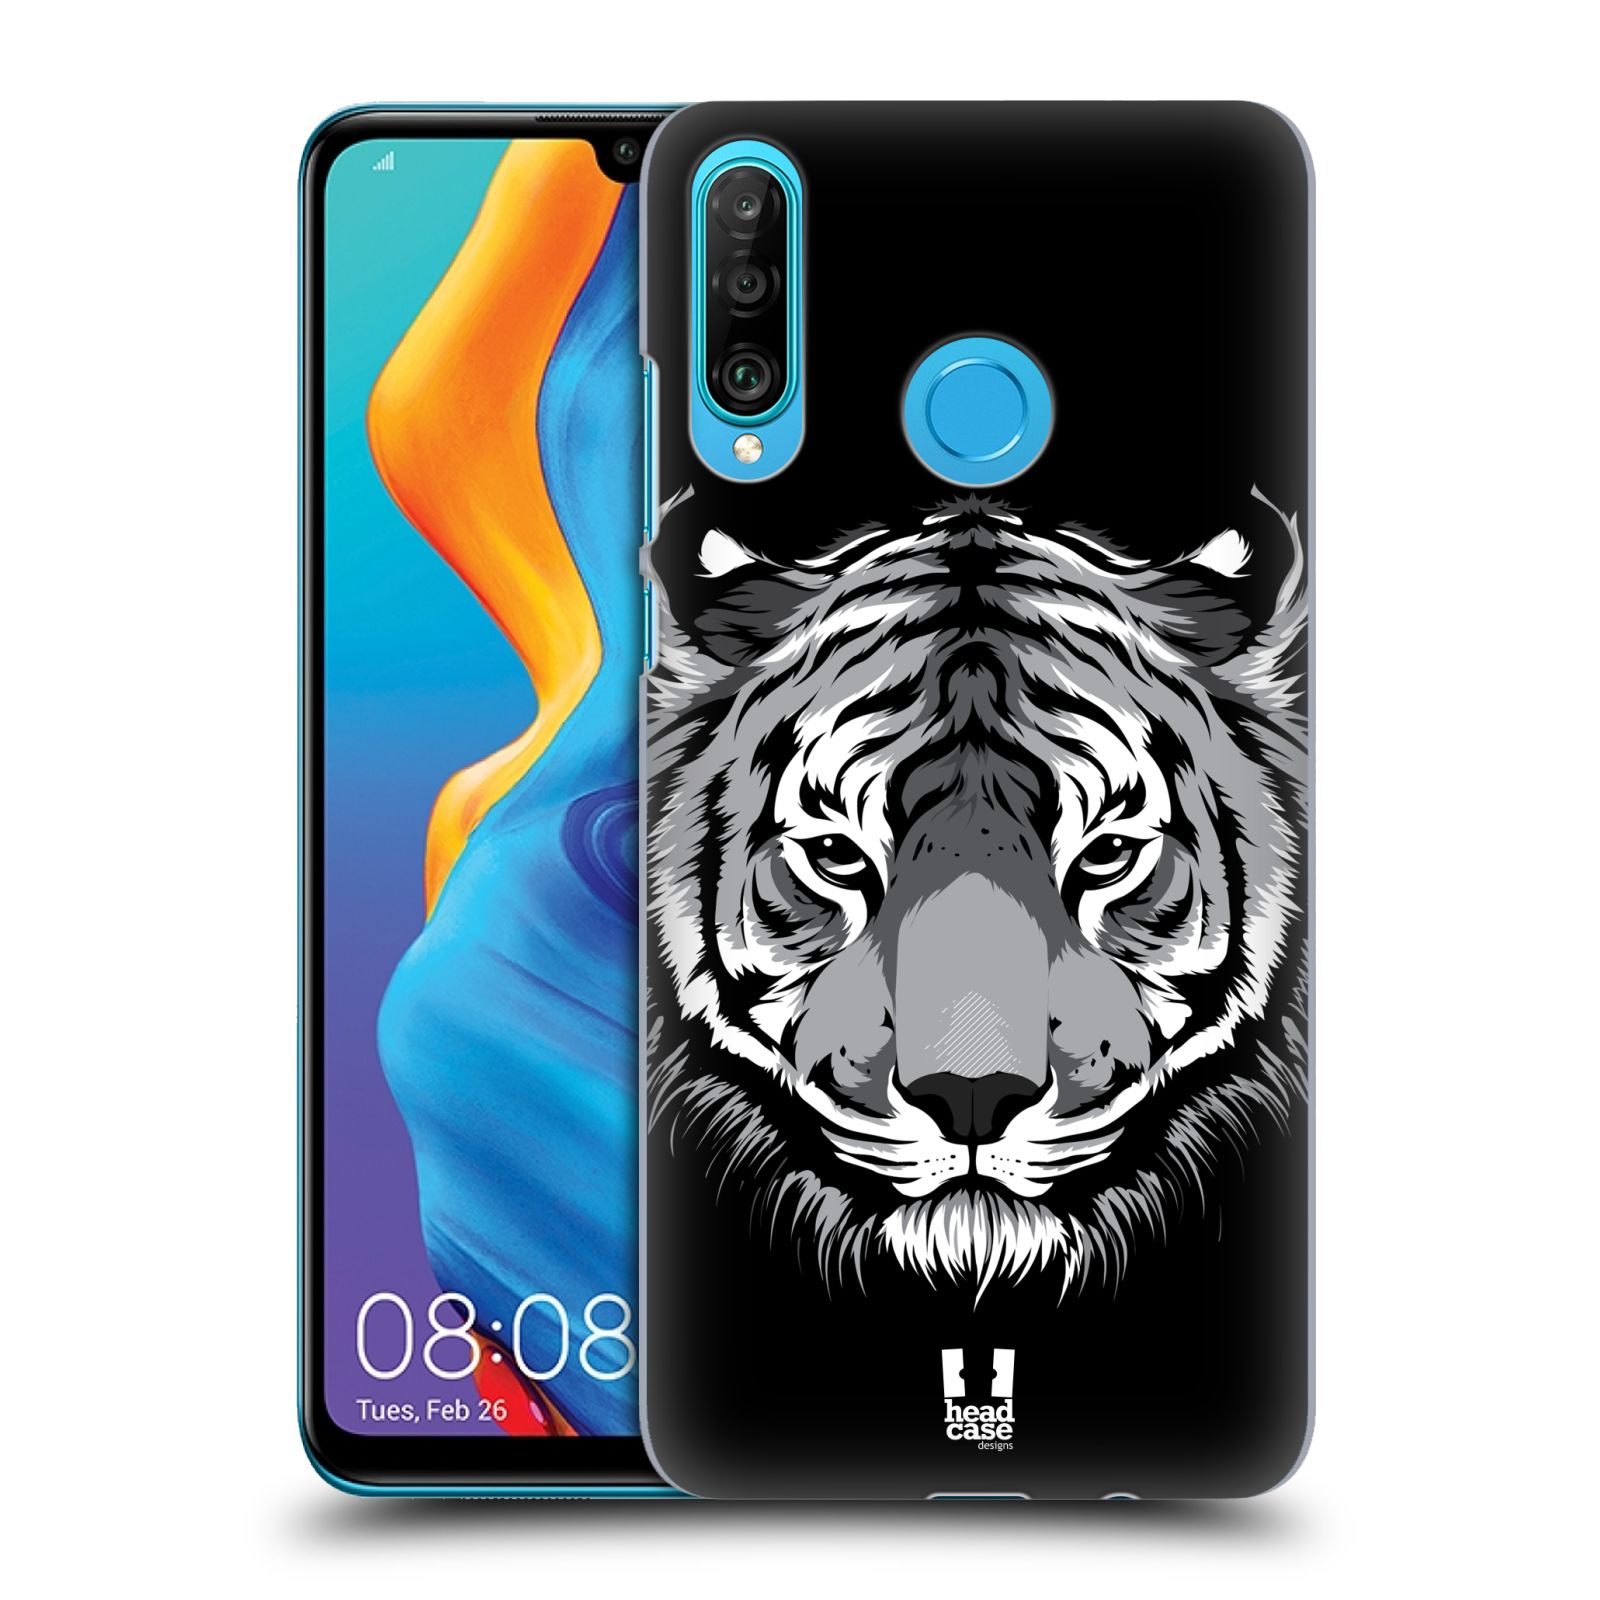 Pouzdro na mobil Huawei P30 LITE - HEAD CASE - vzor Zvíře kreslená tvář 2 tygr